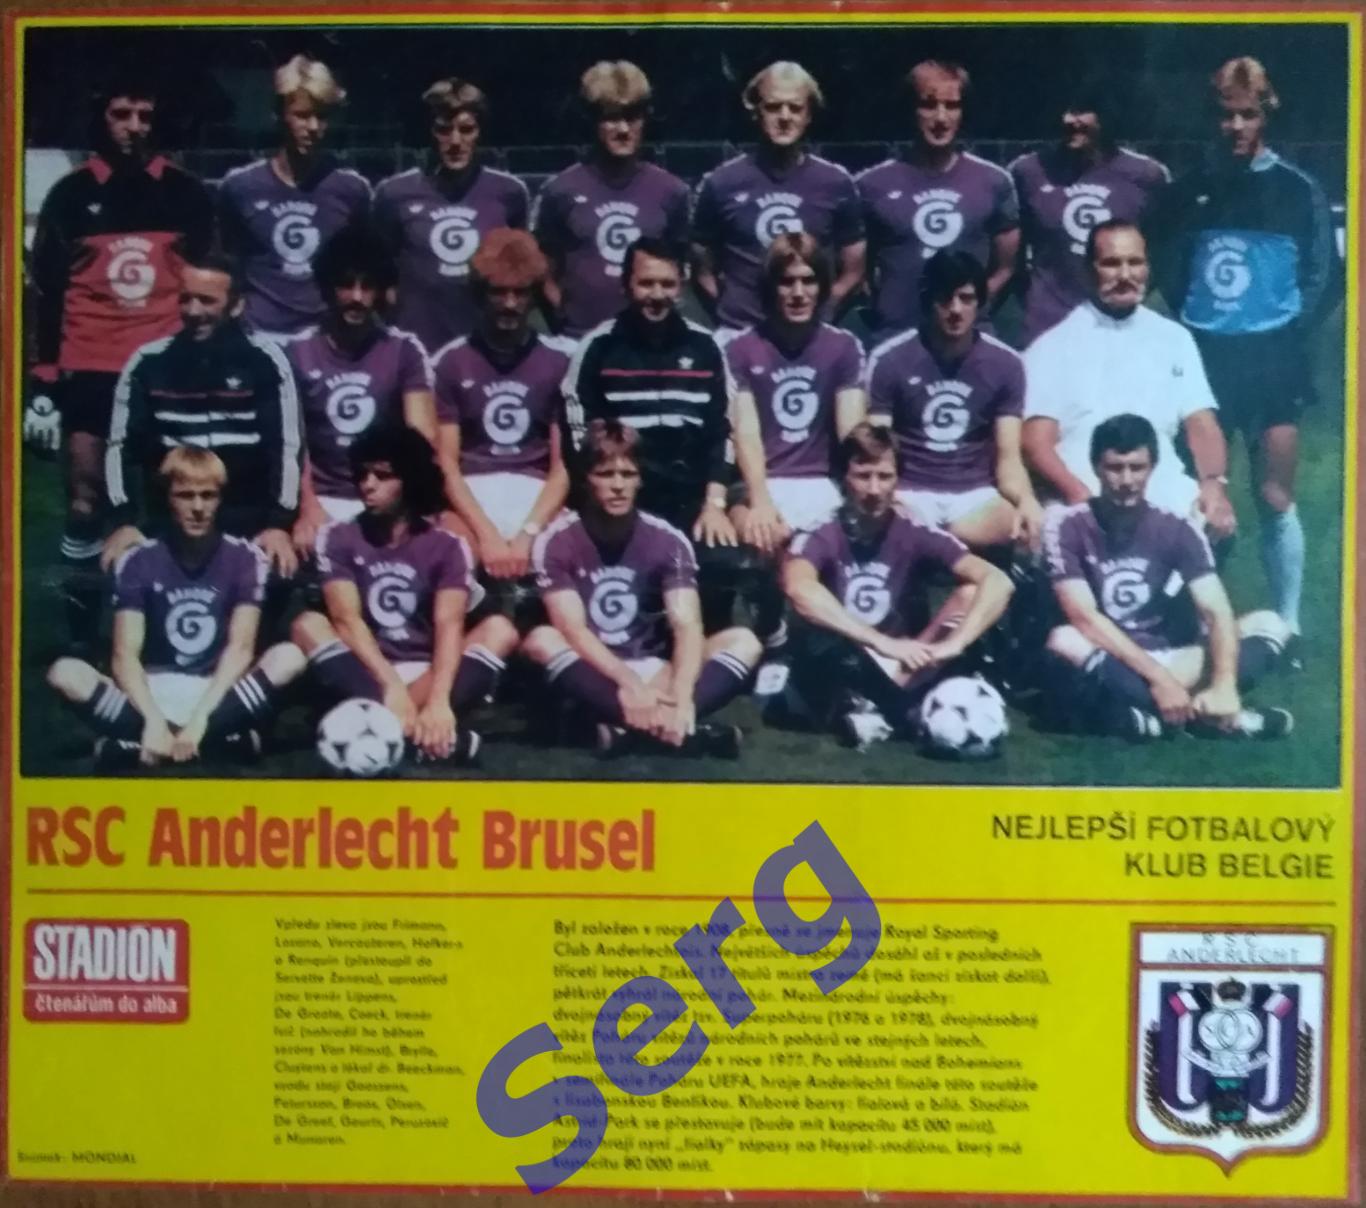 Постер Андерлехт Брюссель, Бельгия из журнала Стадион (Stadion)